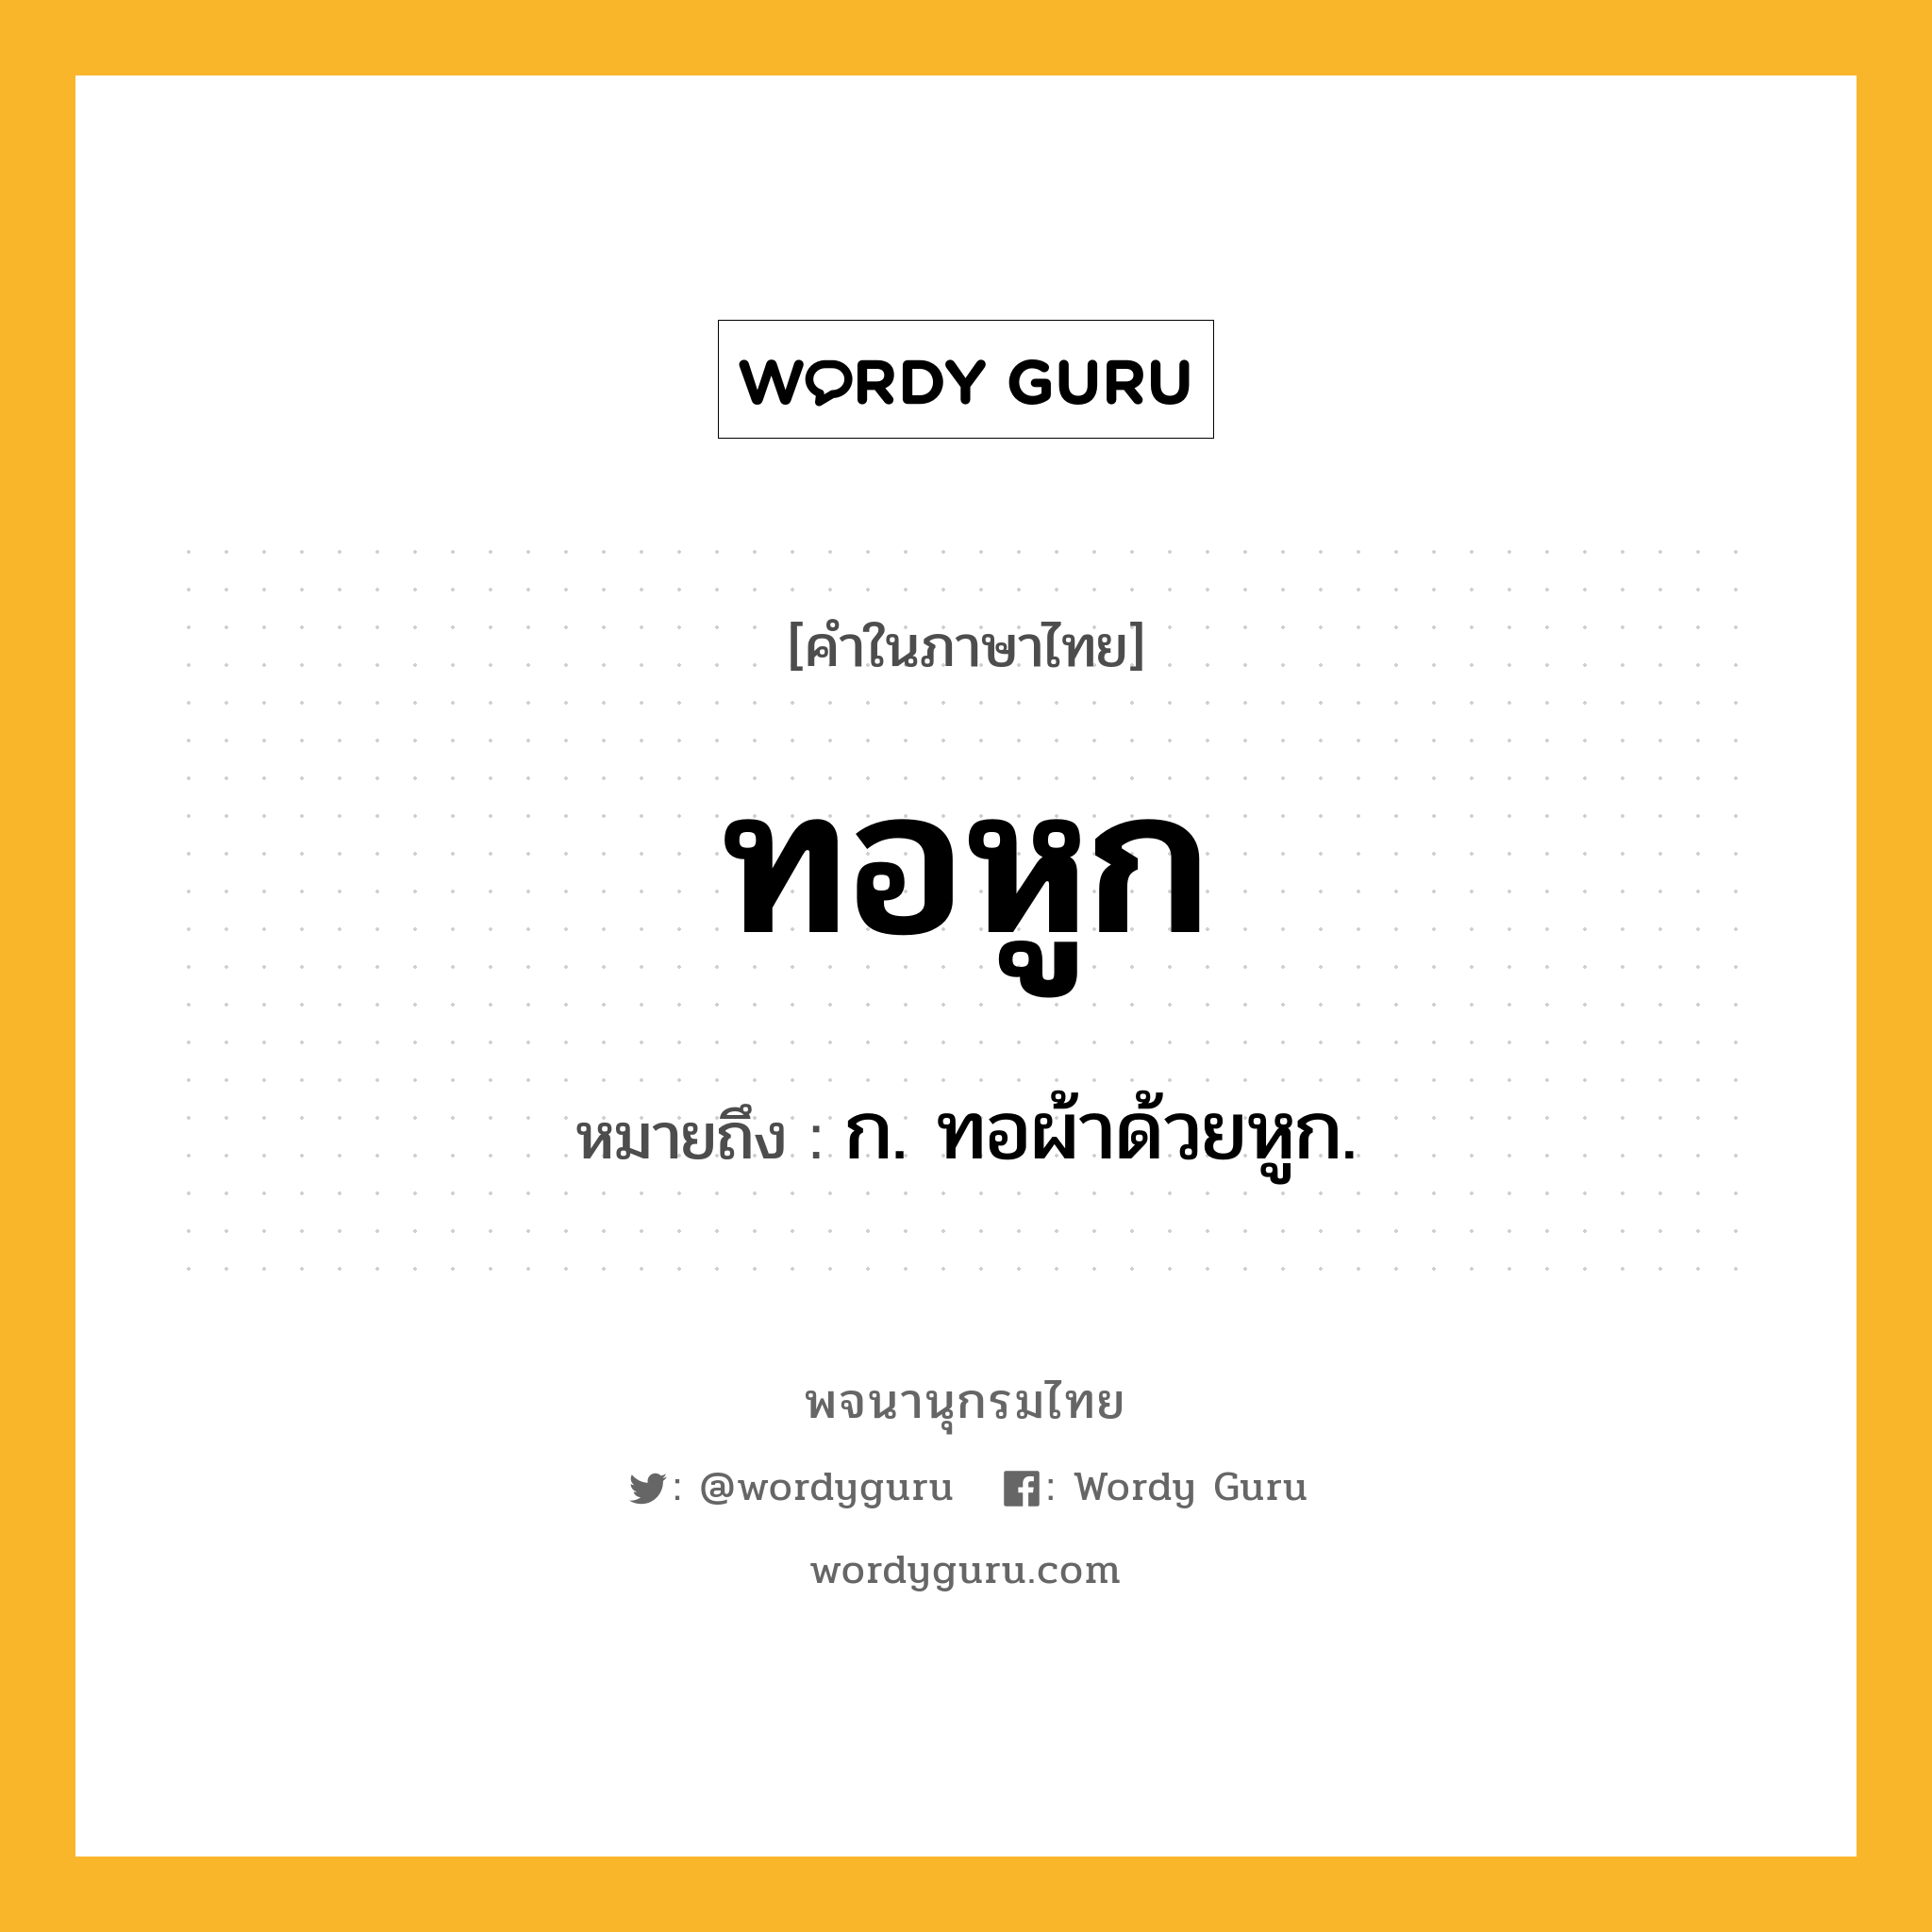 ทอหูก ความหมาย หมายถึงอะไร?, คำในภาษาไทย ทอหูก หมายถึง ก. ทอผ้าด้วยหูก.